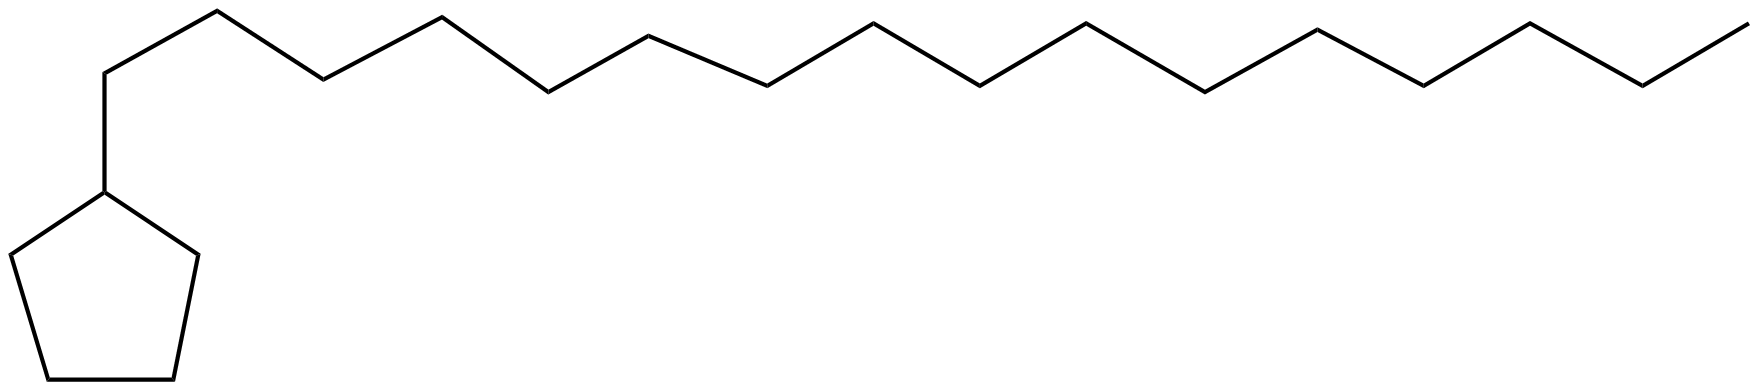 Image of hexadecylcyclopentane